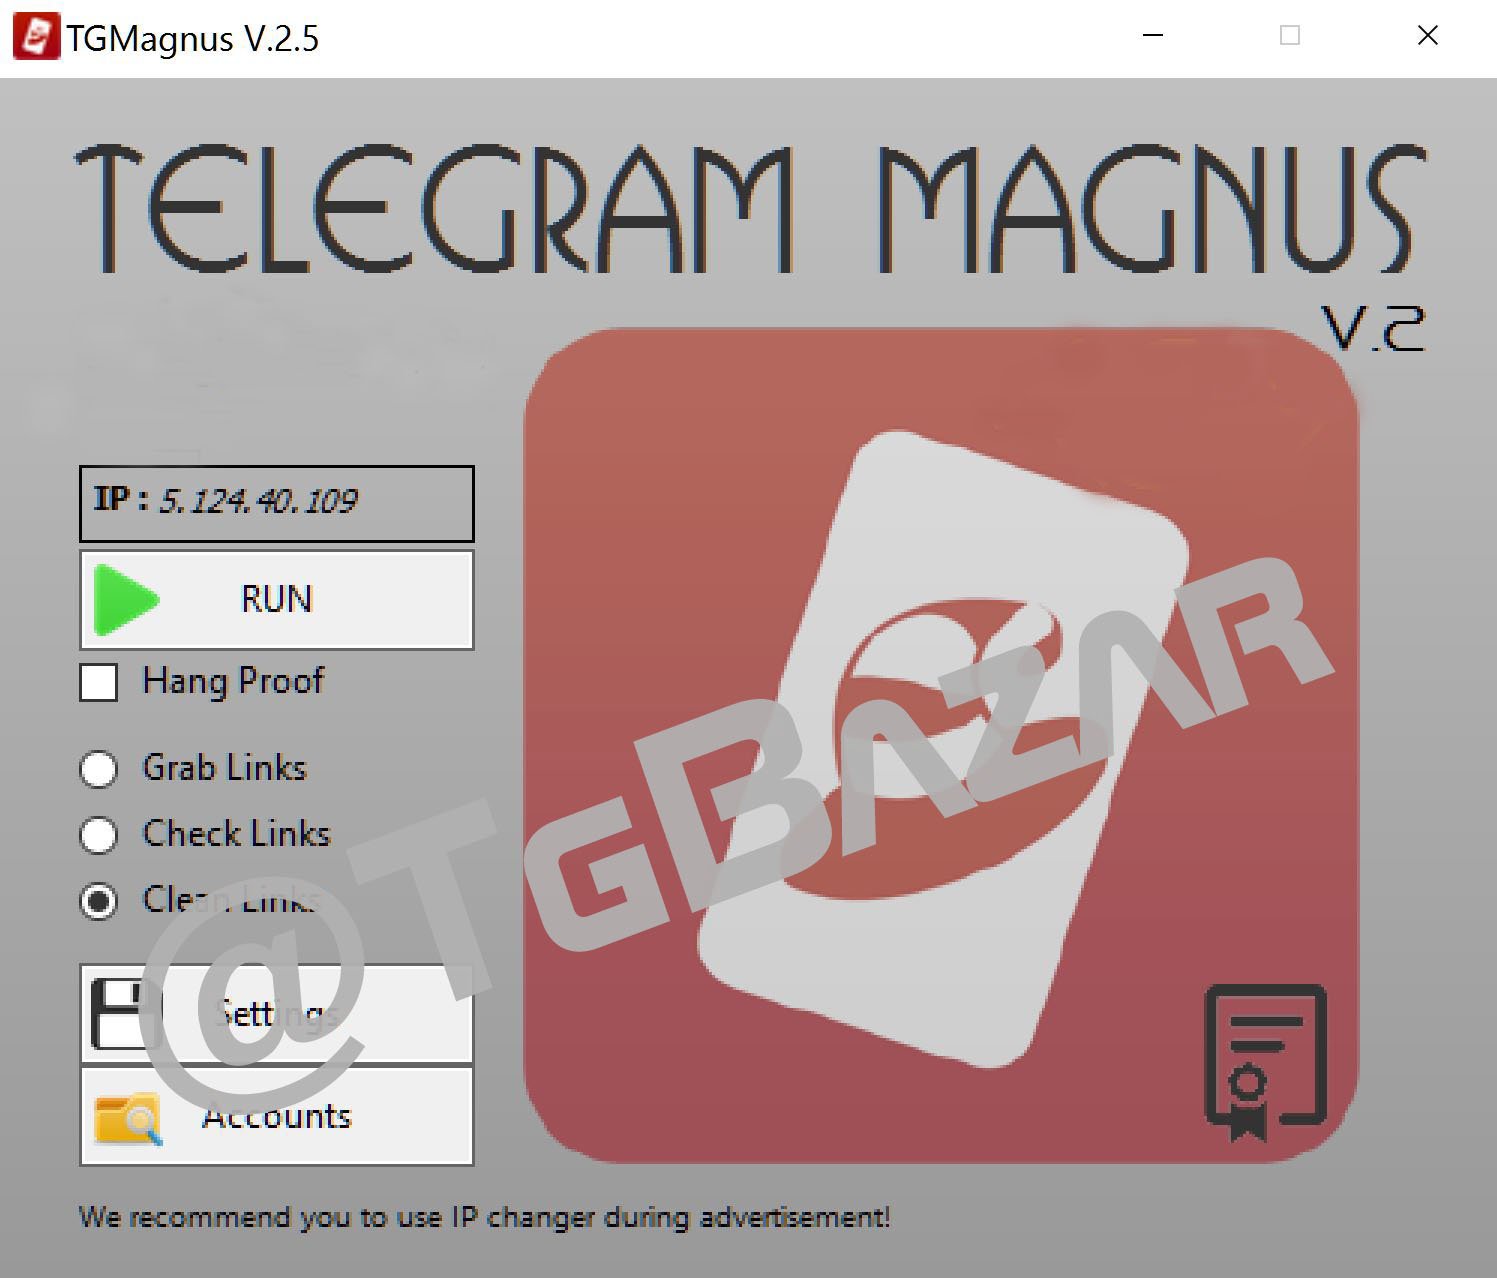 telegrama magnus